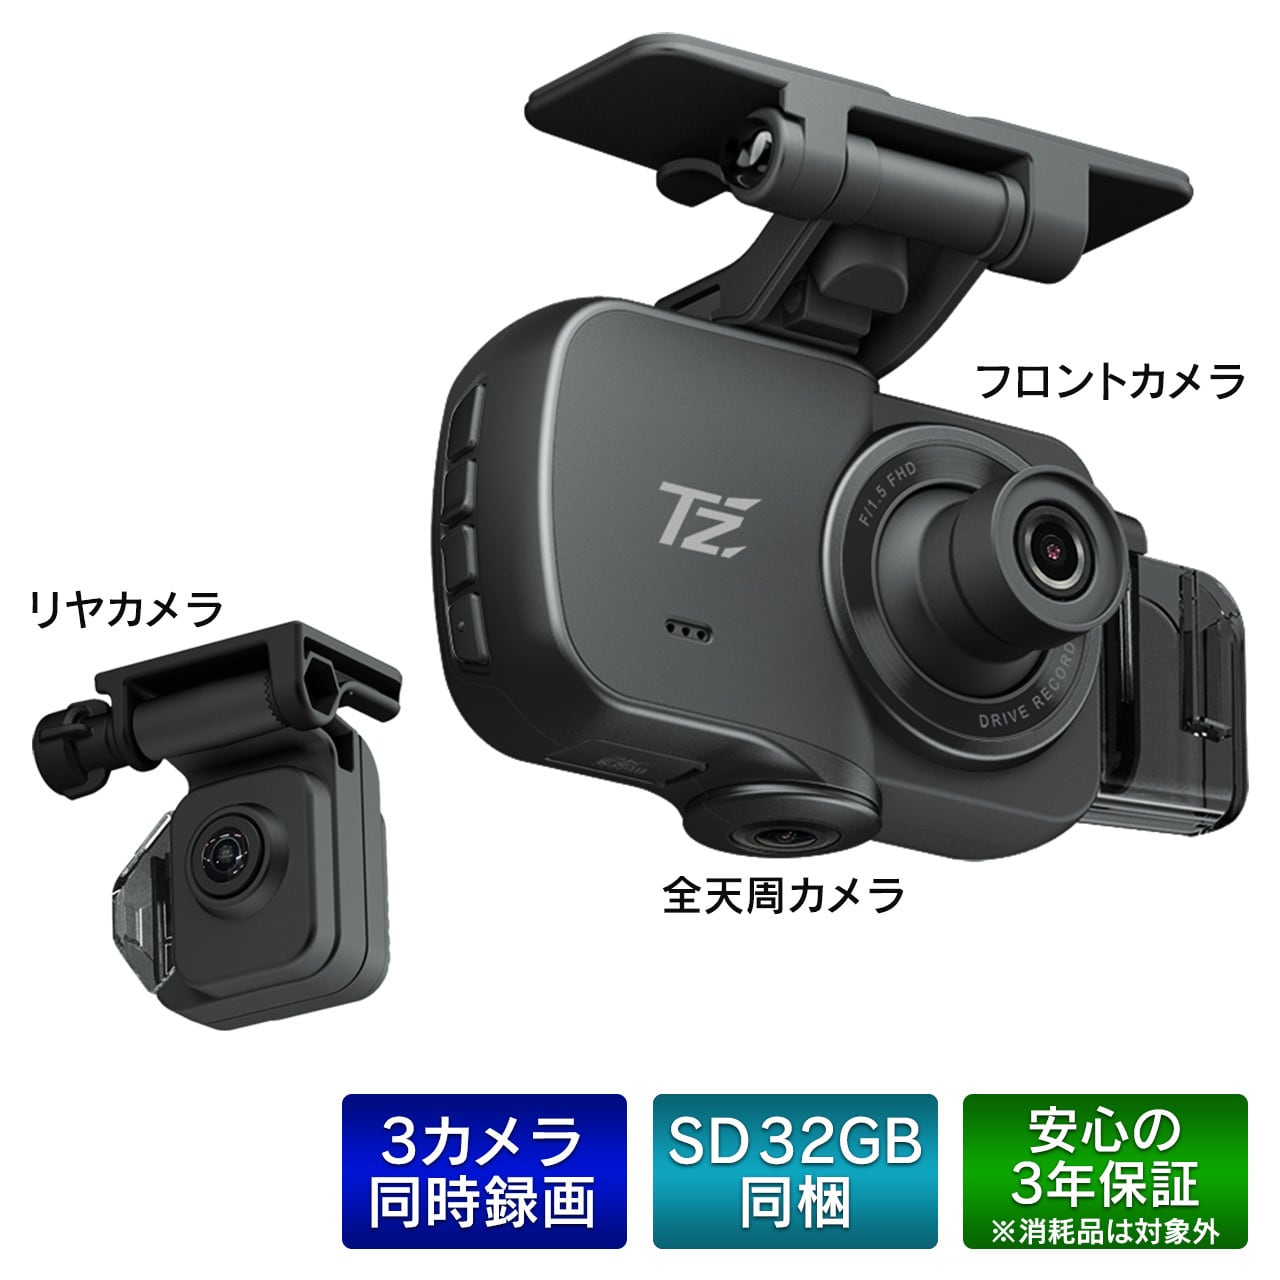 【TZ】360°＋リヤカメラ ドライブレコーダー TZ-DR300